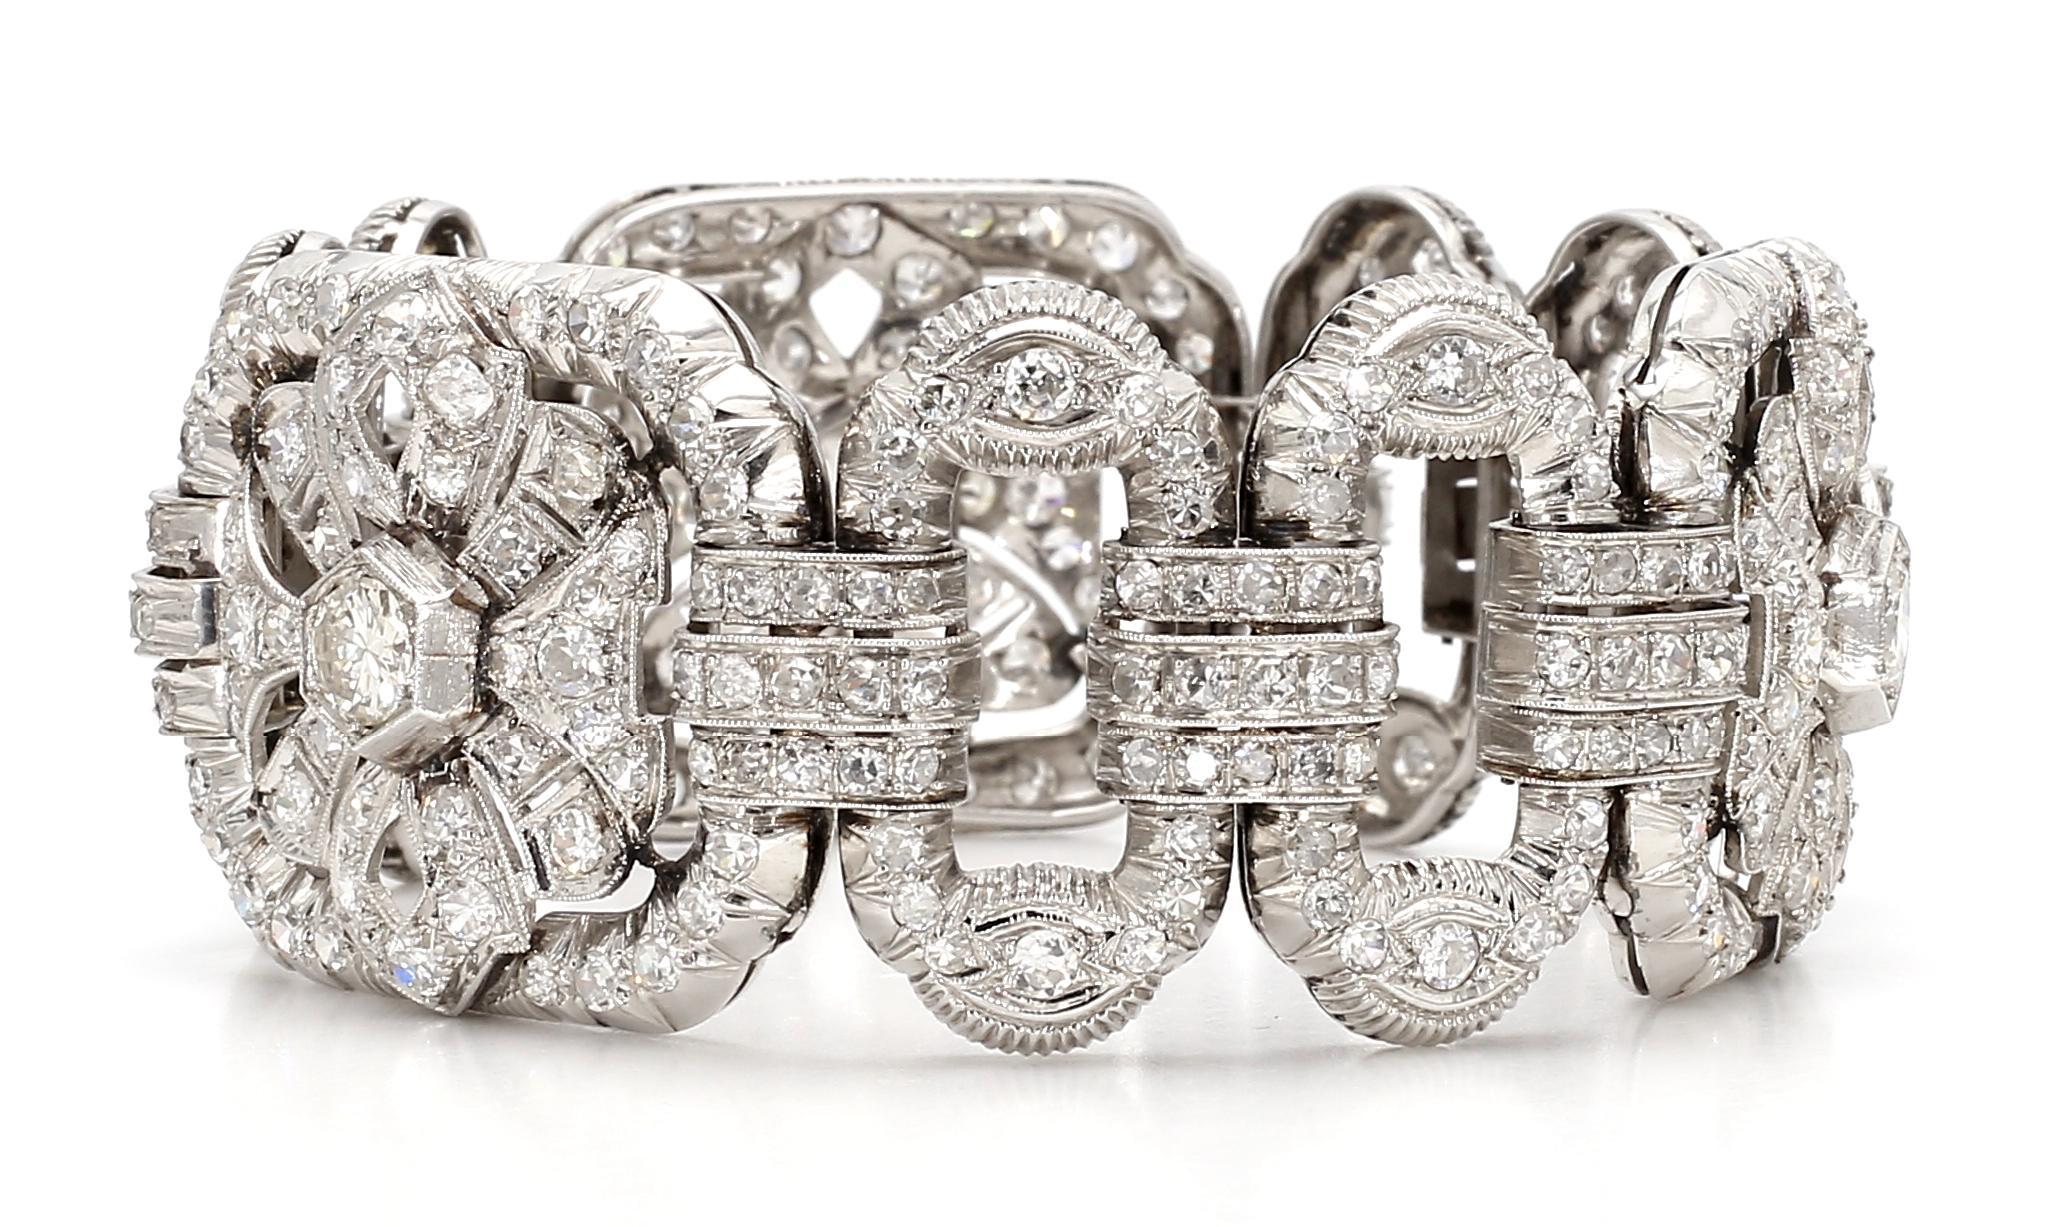 Dieses atemberaubende Diamantband-Armband ist eine luxuriöse Ergänzung für jede Schmucksammlung. Dieses mit 15 Karat funkelnden Diamanten und 18 Karat Gold gefertigte Armband strahlt Eleganz und Raffinesse aus. Das halbflexible Band sorgt für